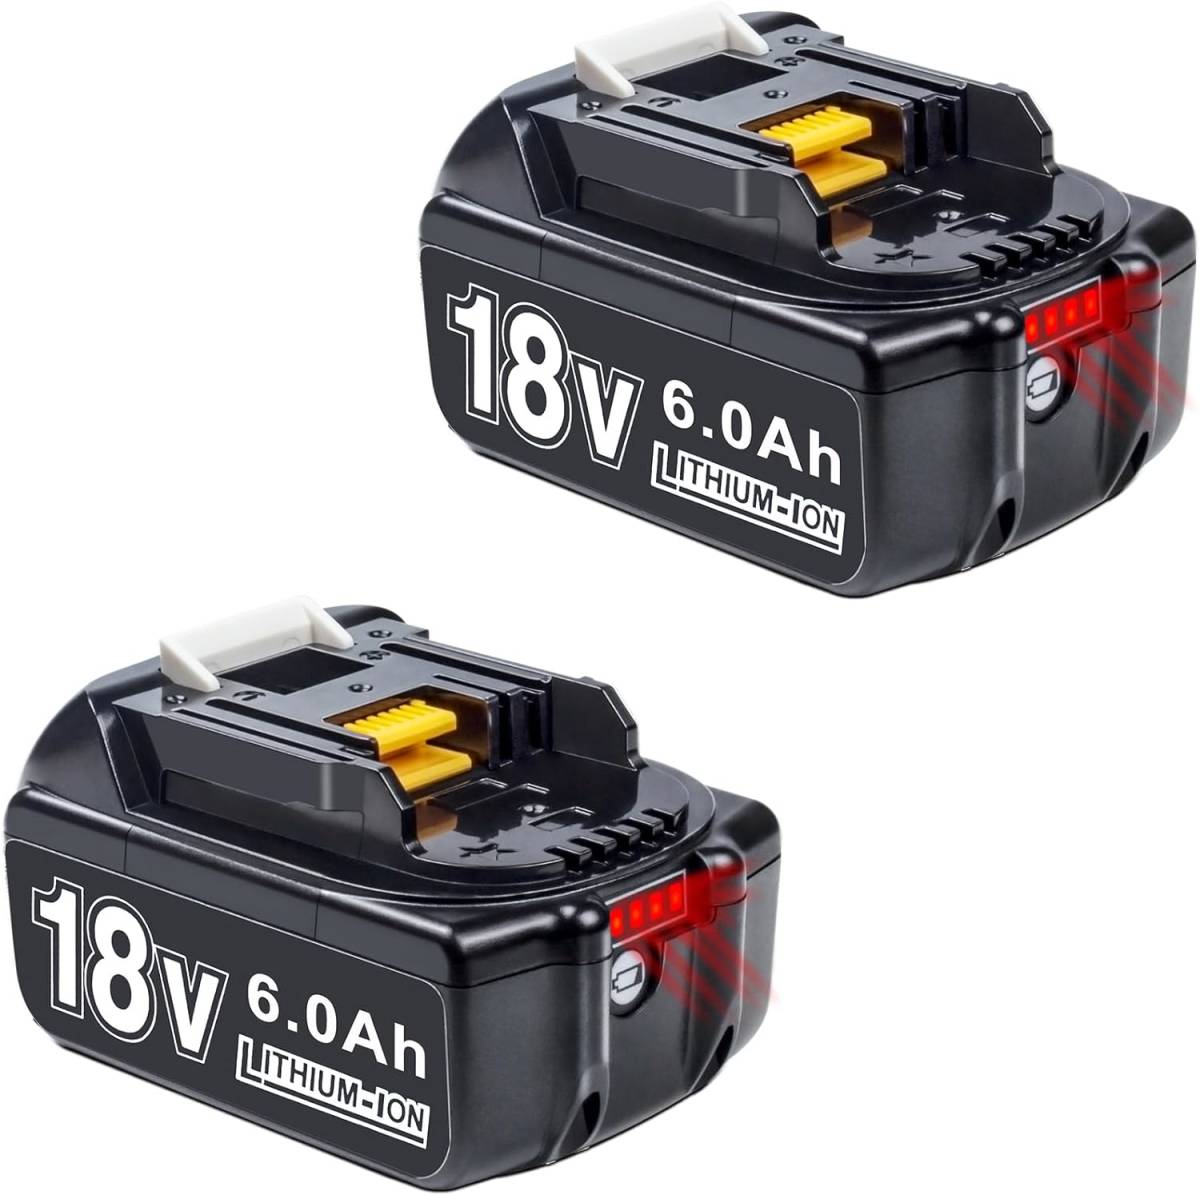 BOTKK 2個セット 互換 マキタ 18V バッテリー. BL1860B 18V 6.0Ah 電動工具用 バッテリー 大容量電池LEDデジタル残量表示